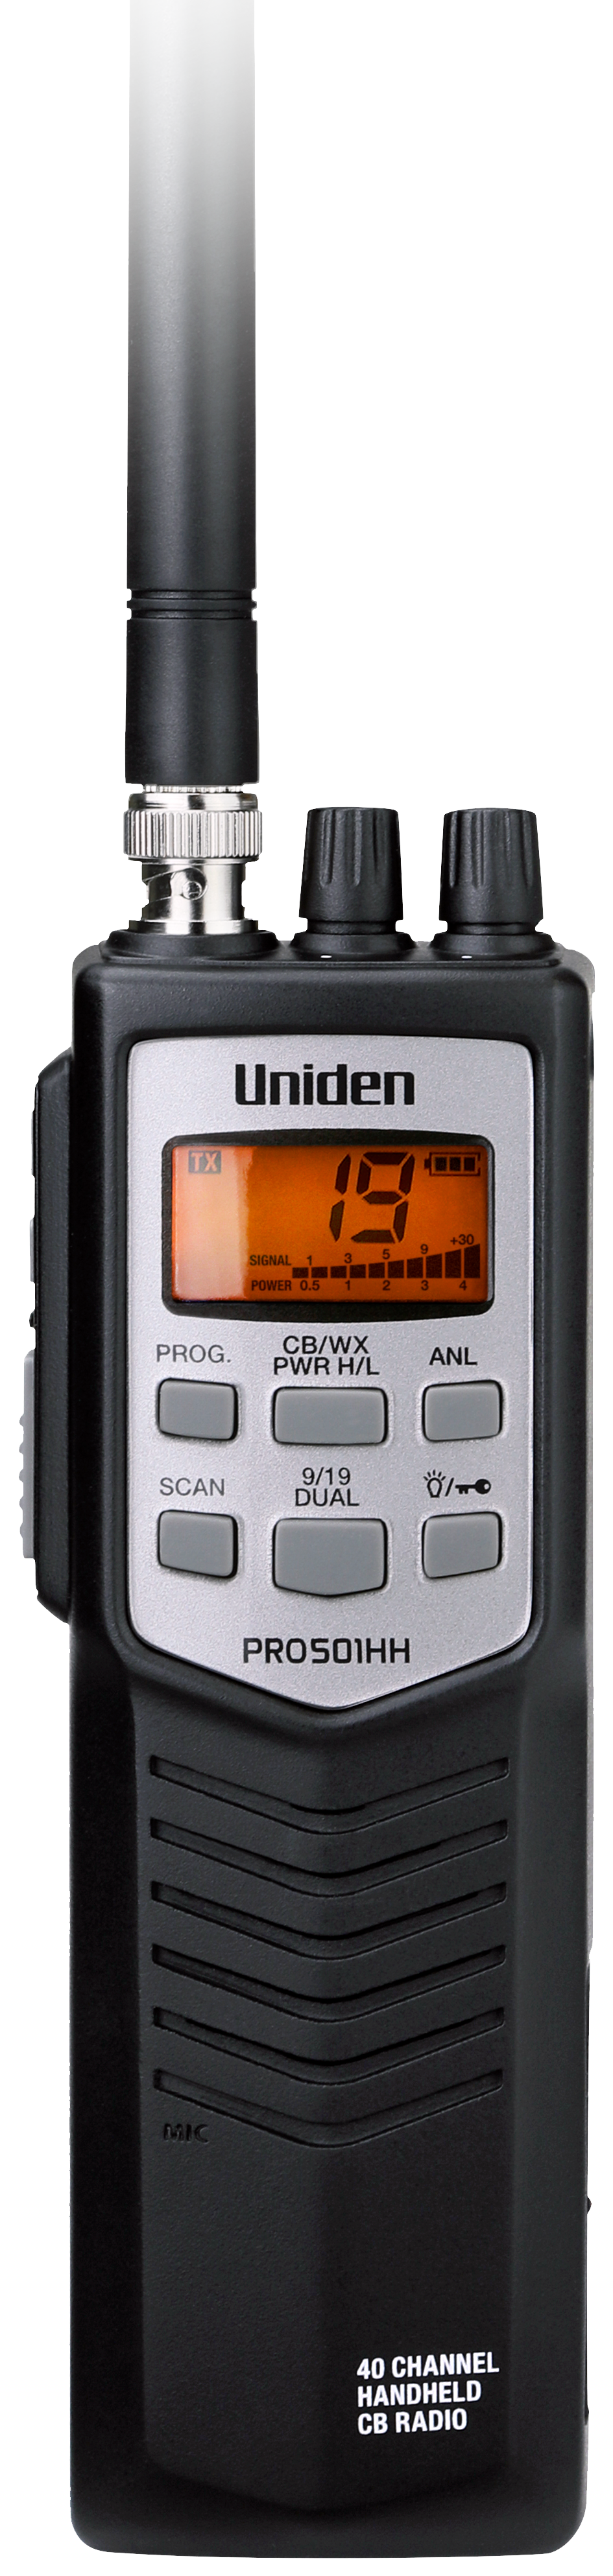 PRO501HH – Uniden America Corporation